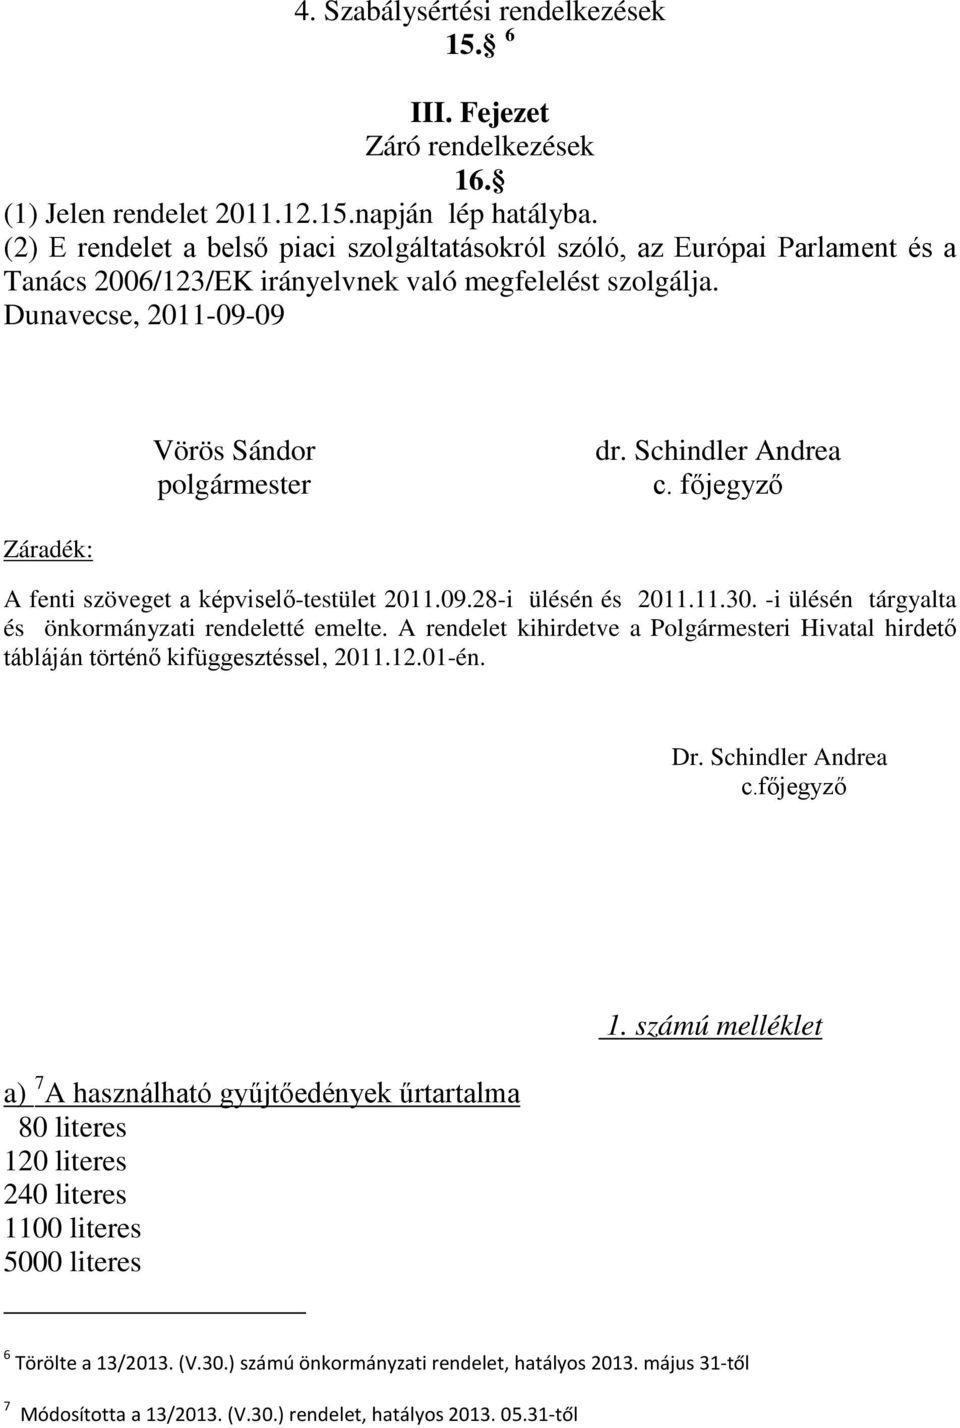 Schindler Andrea c. főjegyző Záradék: A fenti szöveget a képviselő-testület 2011.09.28-i ülésén és 2011.11.30. -i ülésén tárgyalta és önkormányzati rendeletté emelte.